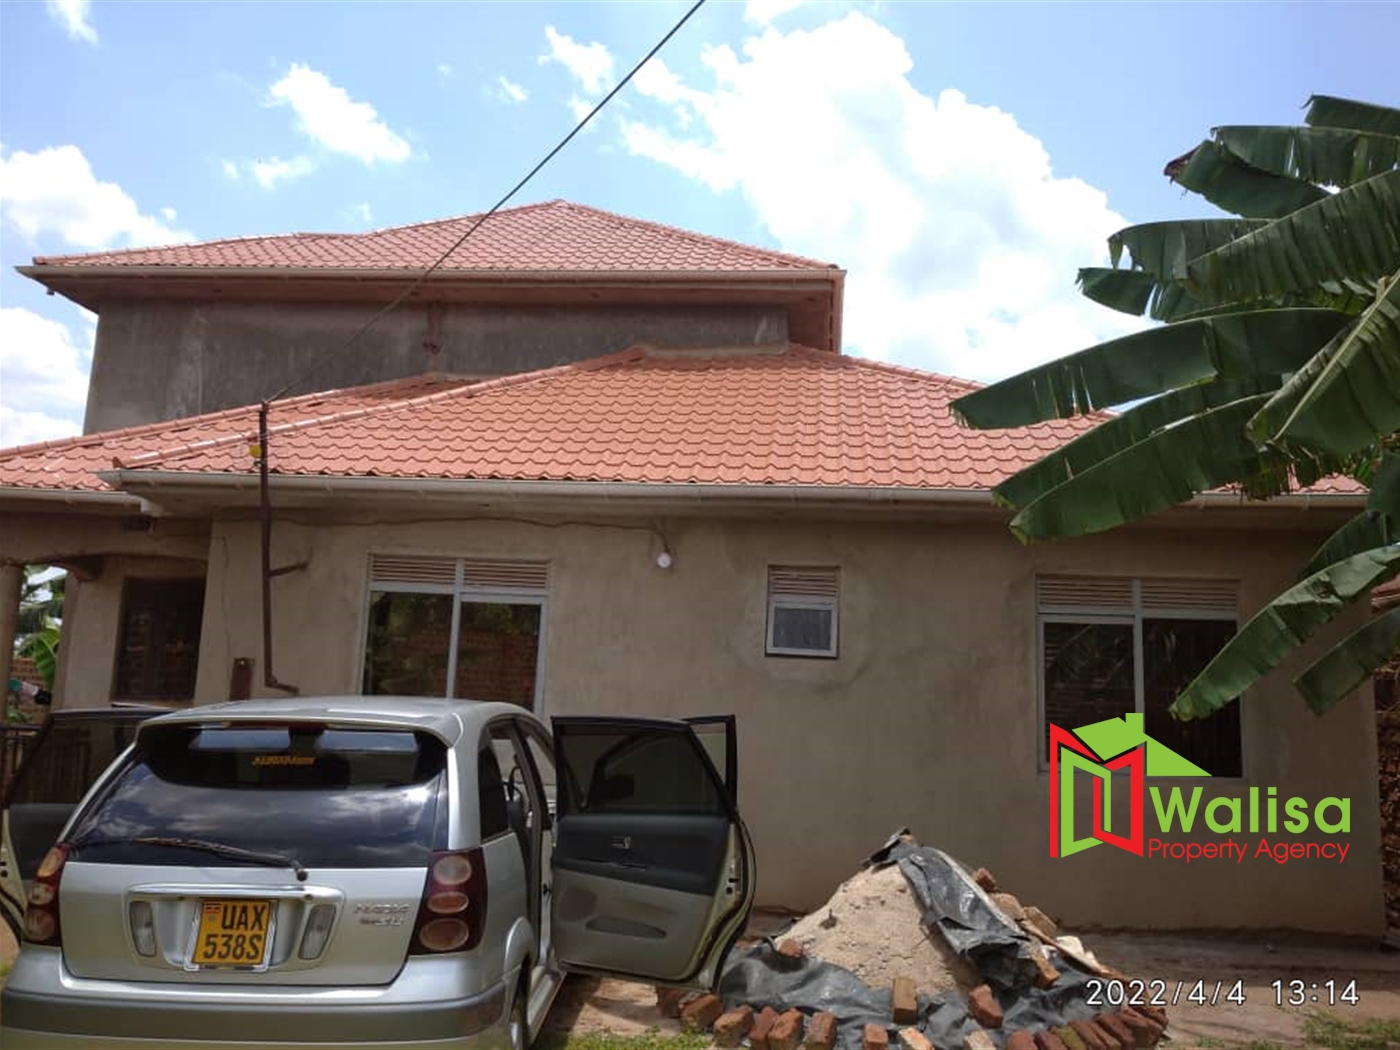 Duplex for sale in Mpererwe Wakiso